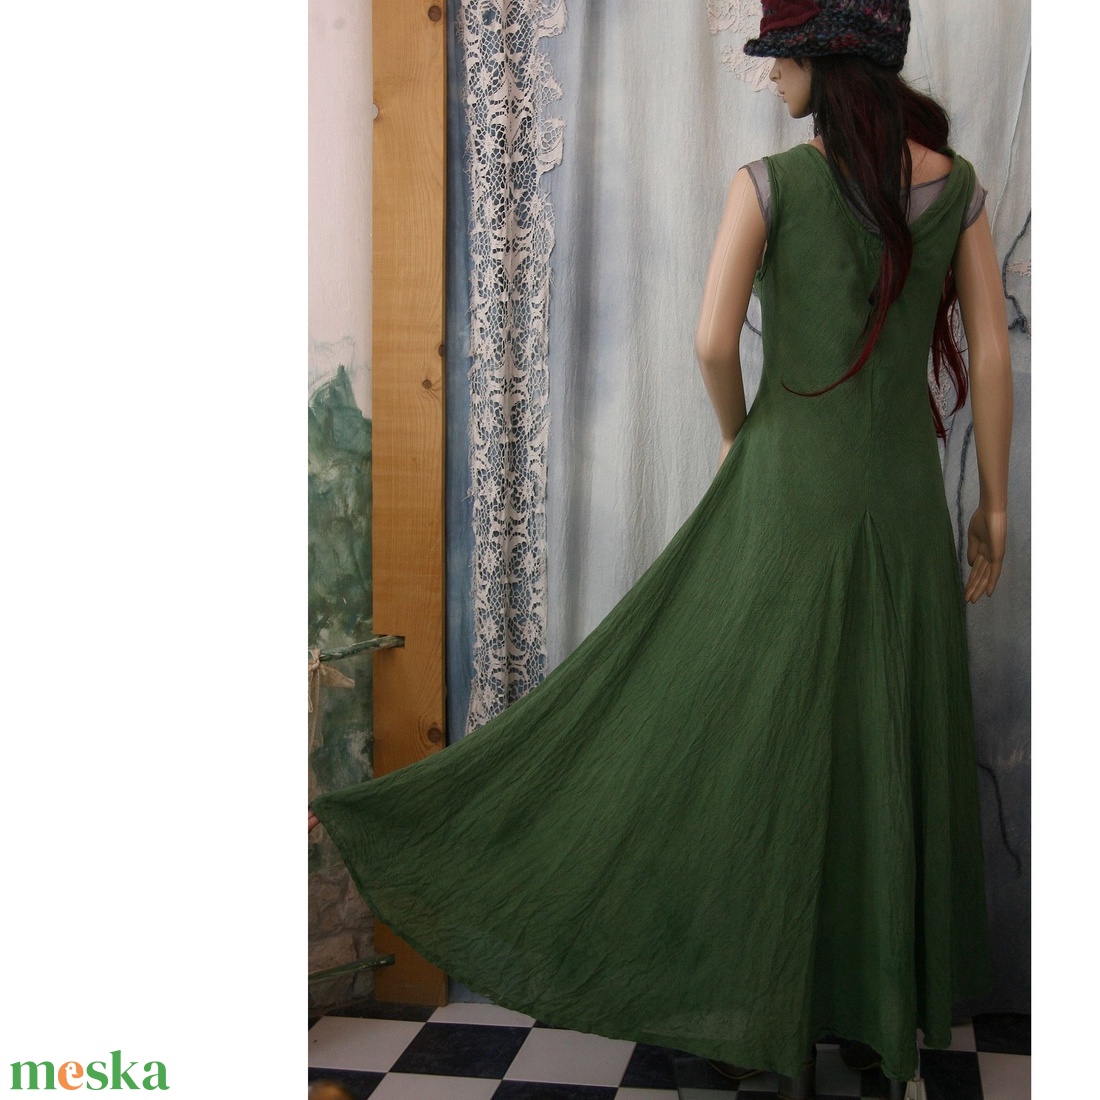  KIRTLE-SZETT - gótikus design szett: pamut ruha, selyem alsóruha, kendő - ruha & divat - női ruha - ruha - Meska.hu